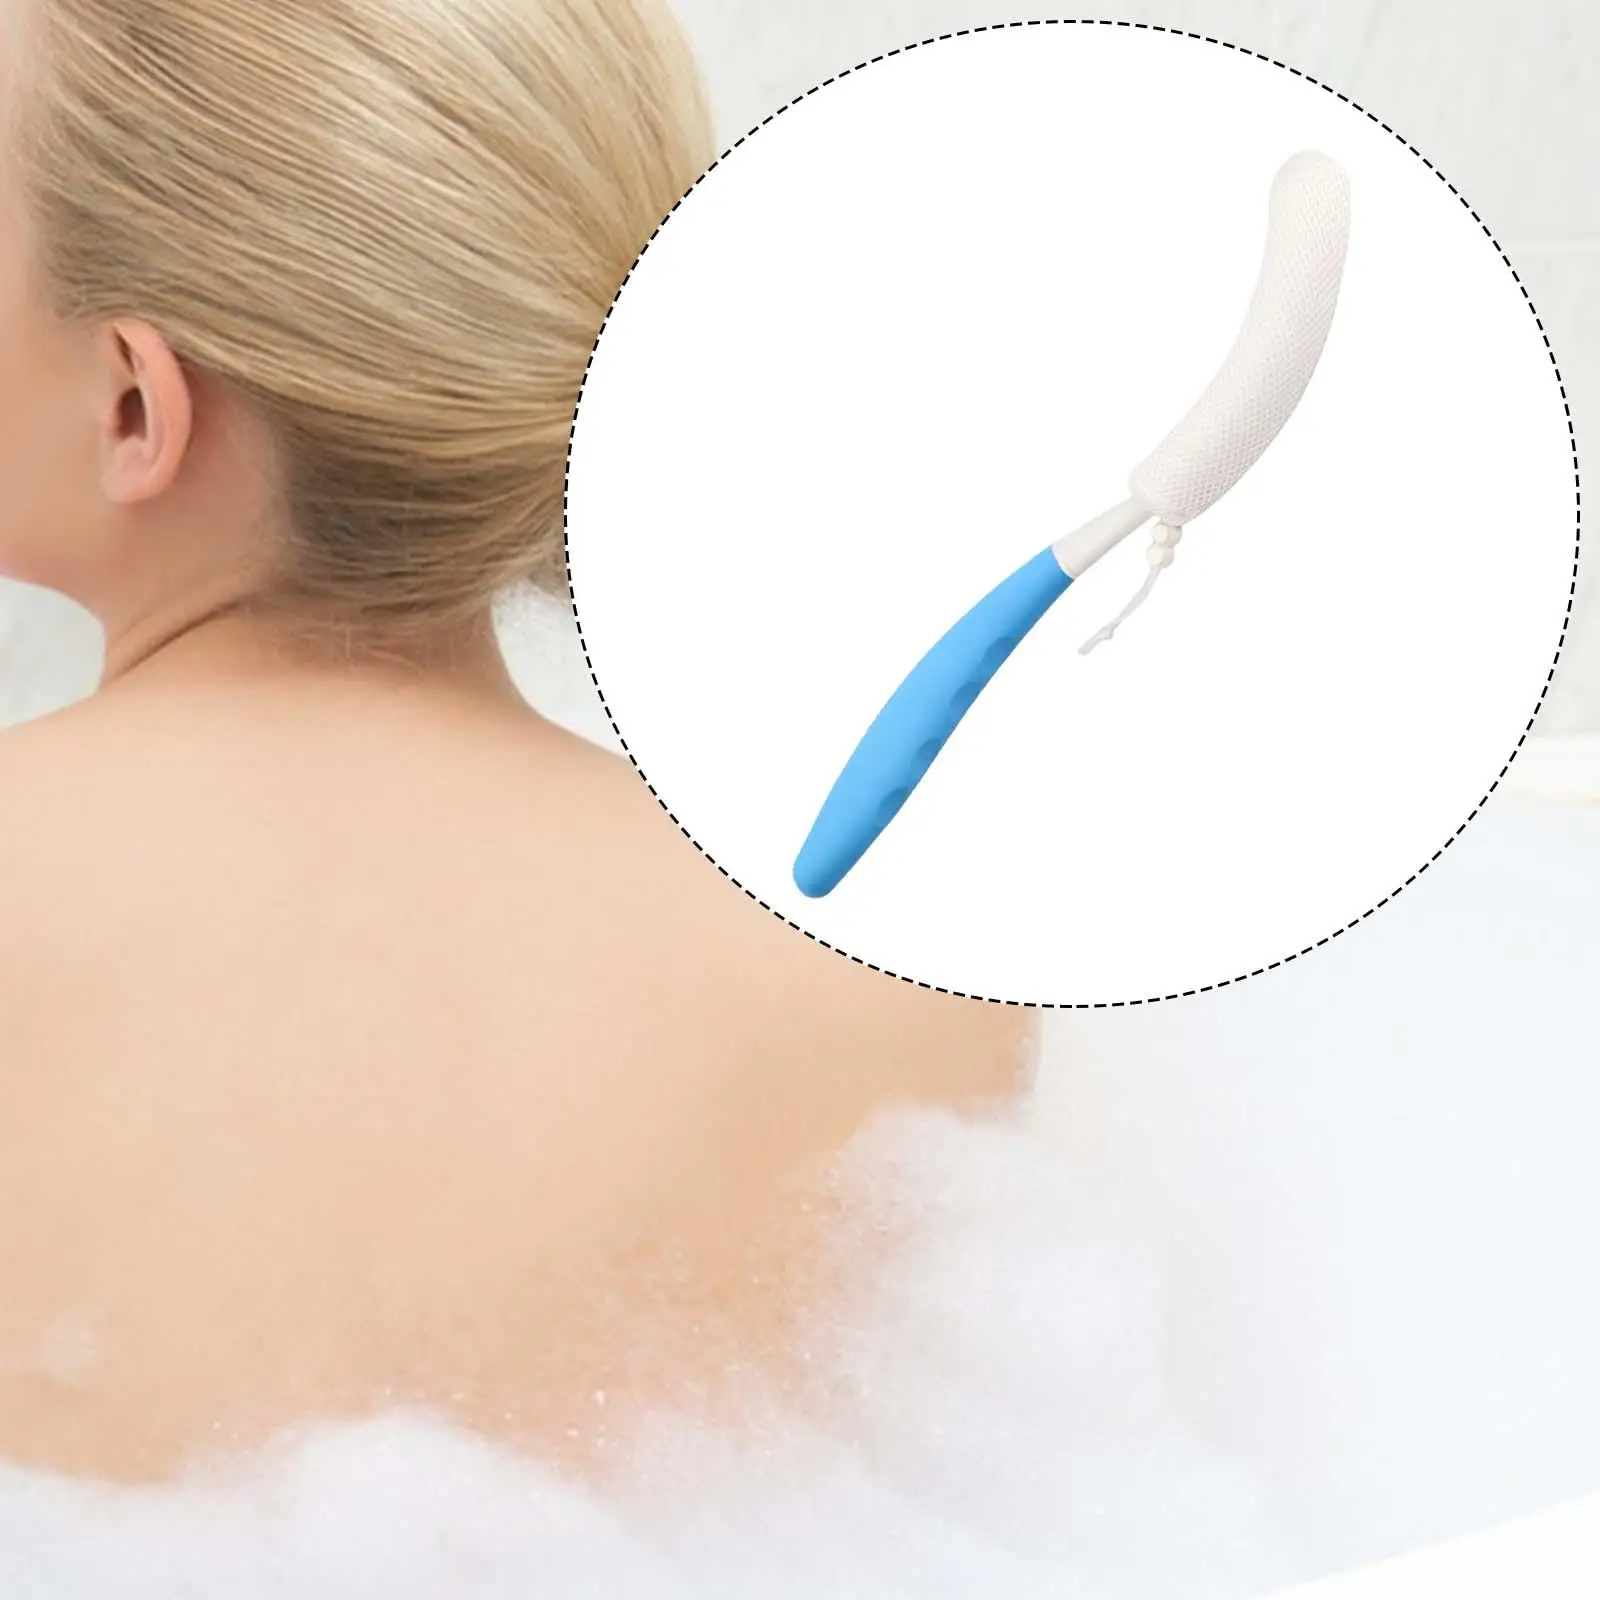 Bath Brush for Back for Men Women Long Handle Scrubbing Back Freely Back Cleaning Brush Shower Body Bath Brush Body Brush